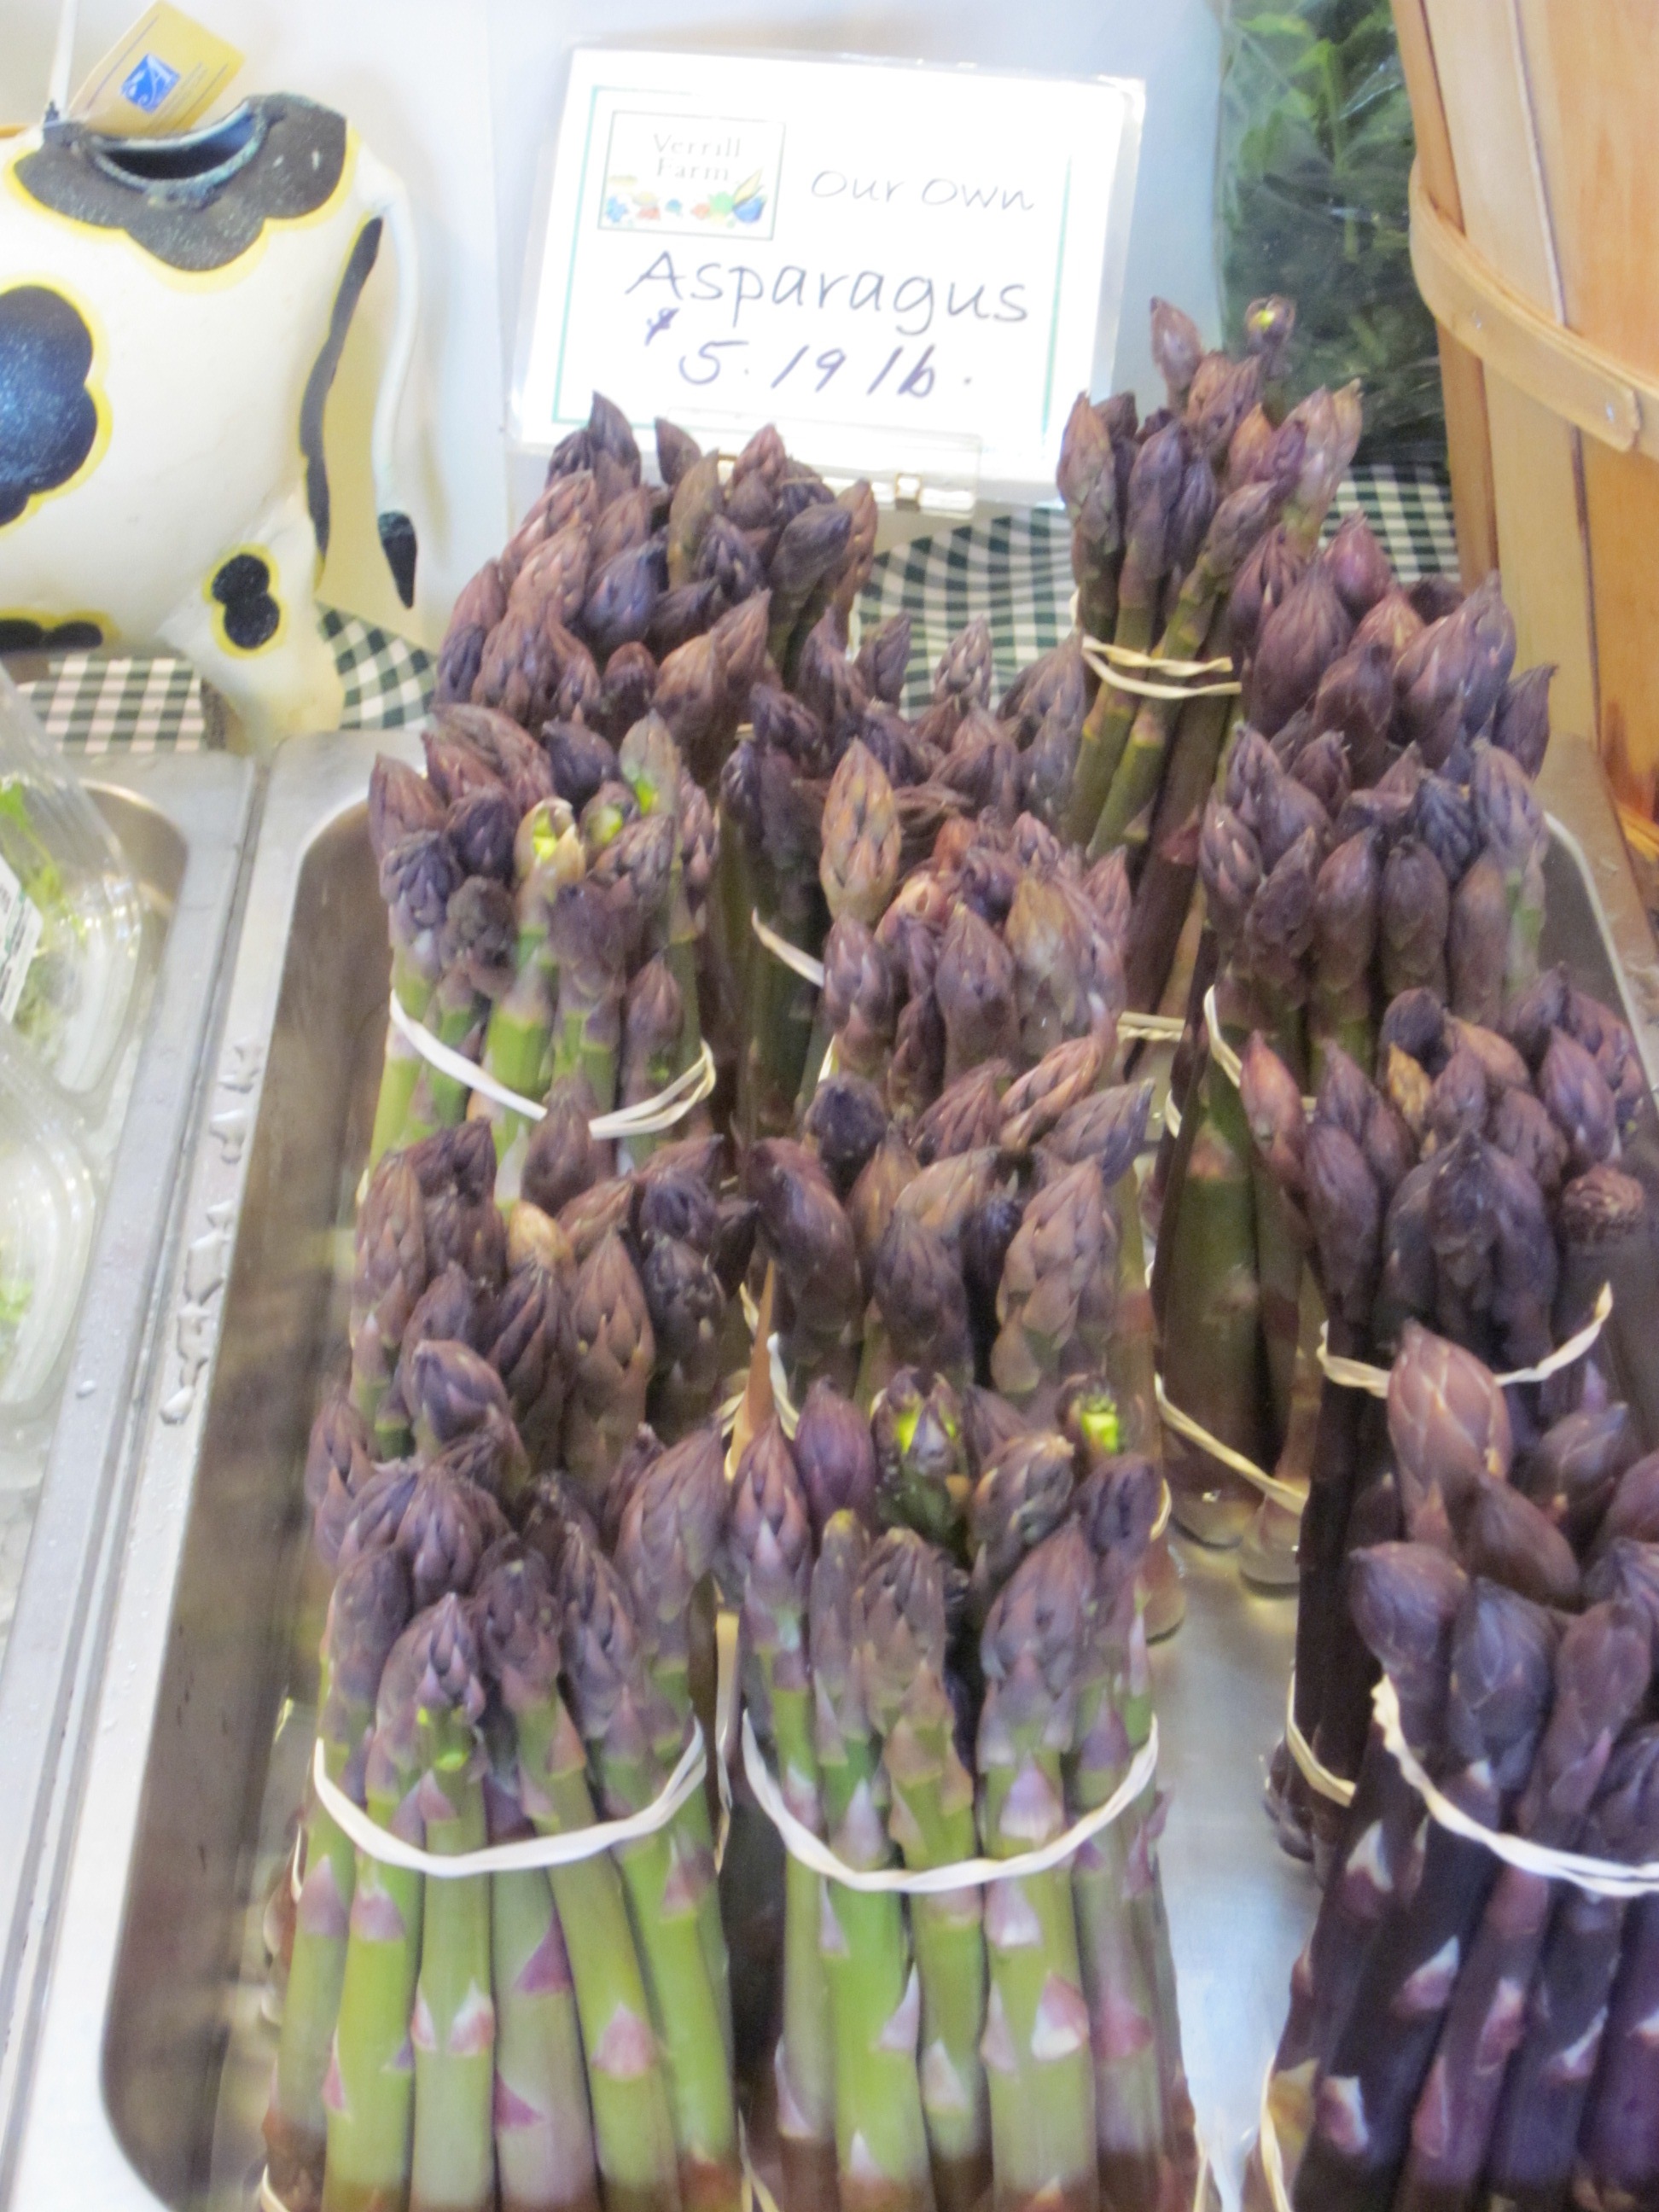 fresh-cut Asparagus at Verrill farm